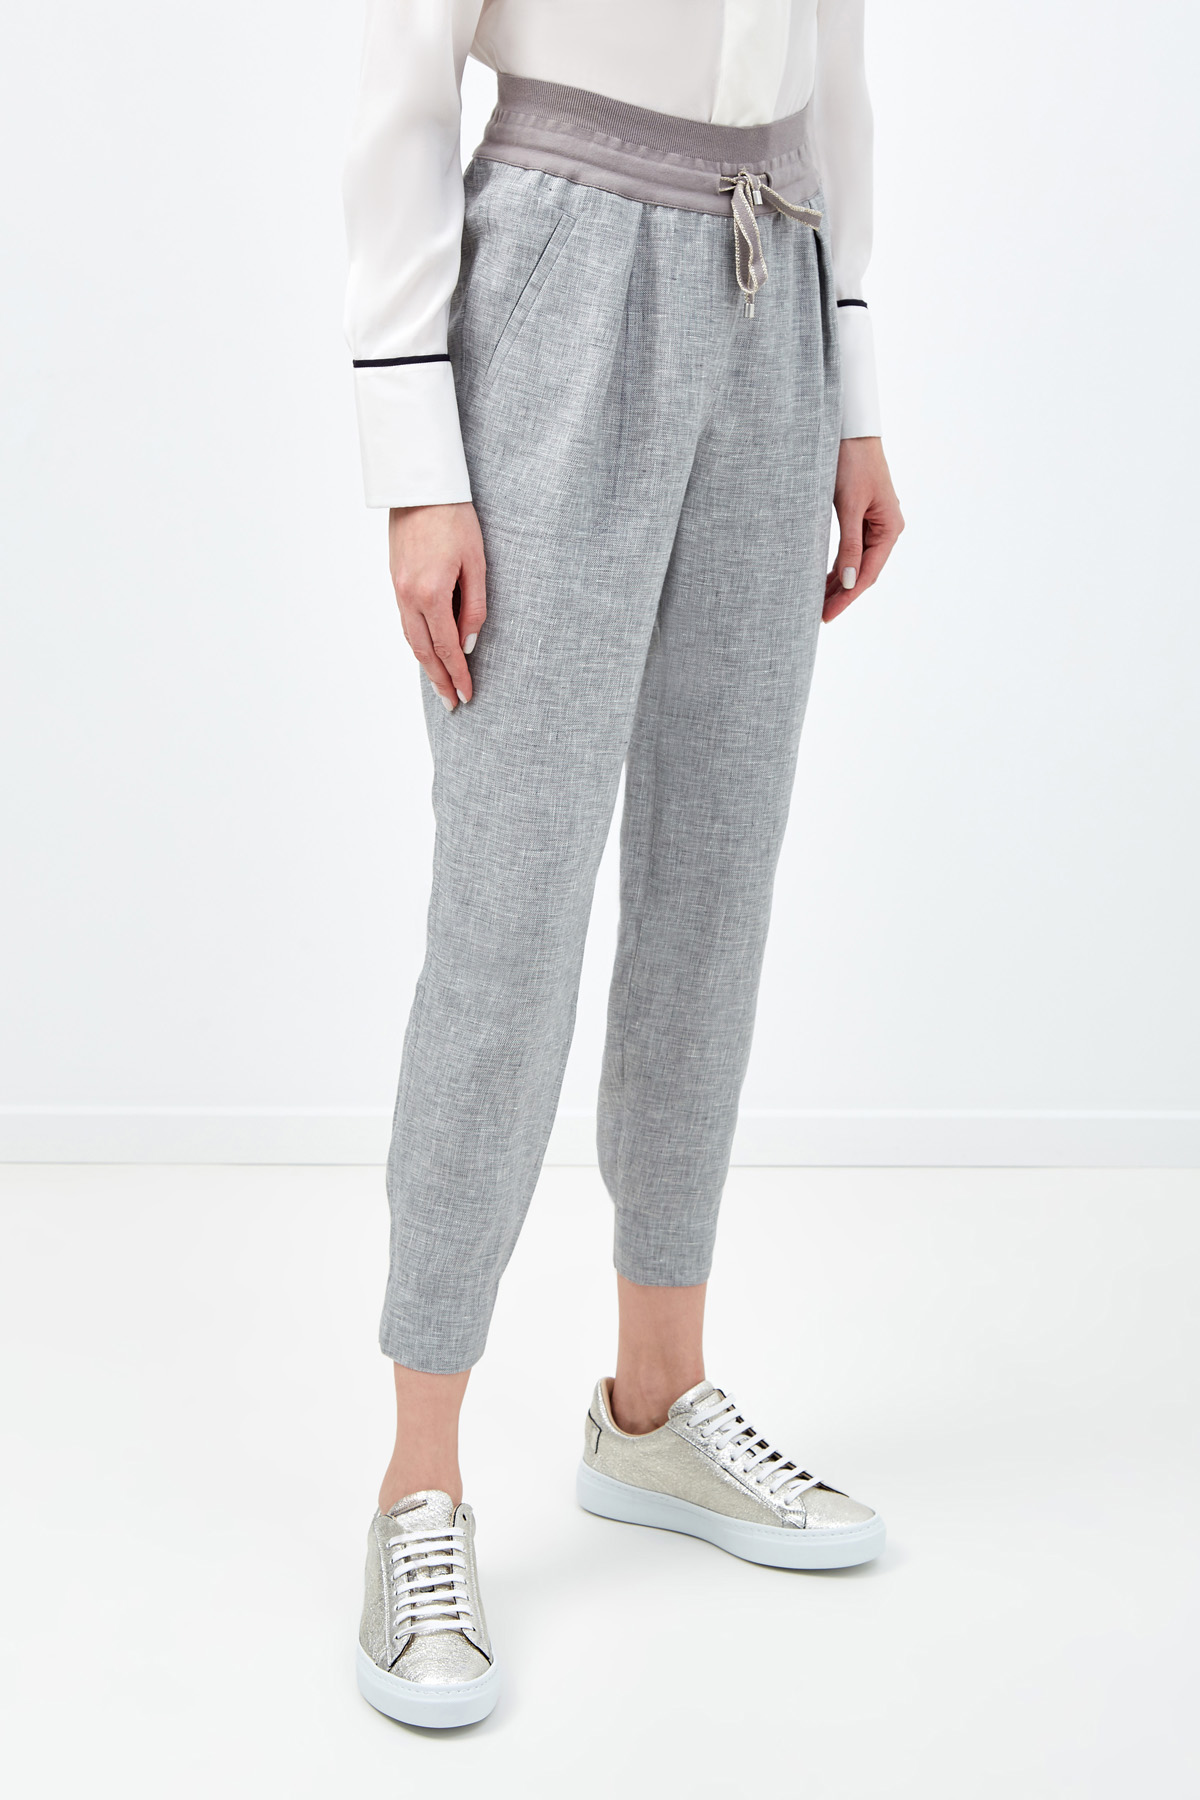 Льняные брюки с отделкой из фирменного джерси LORENA ANTONIAZZI, цвет серый, размер 38 - фото 3